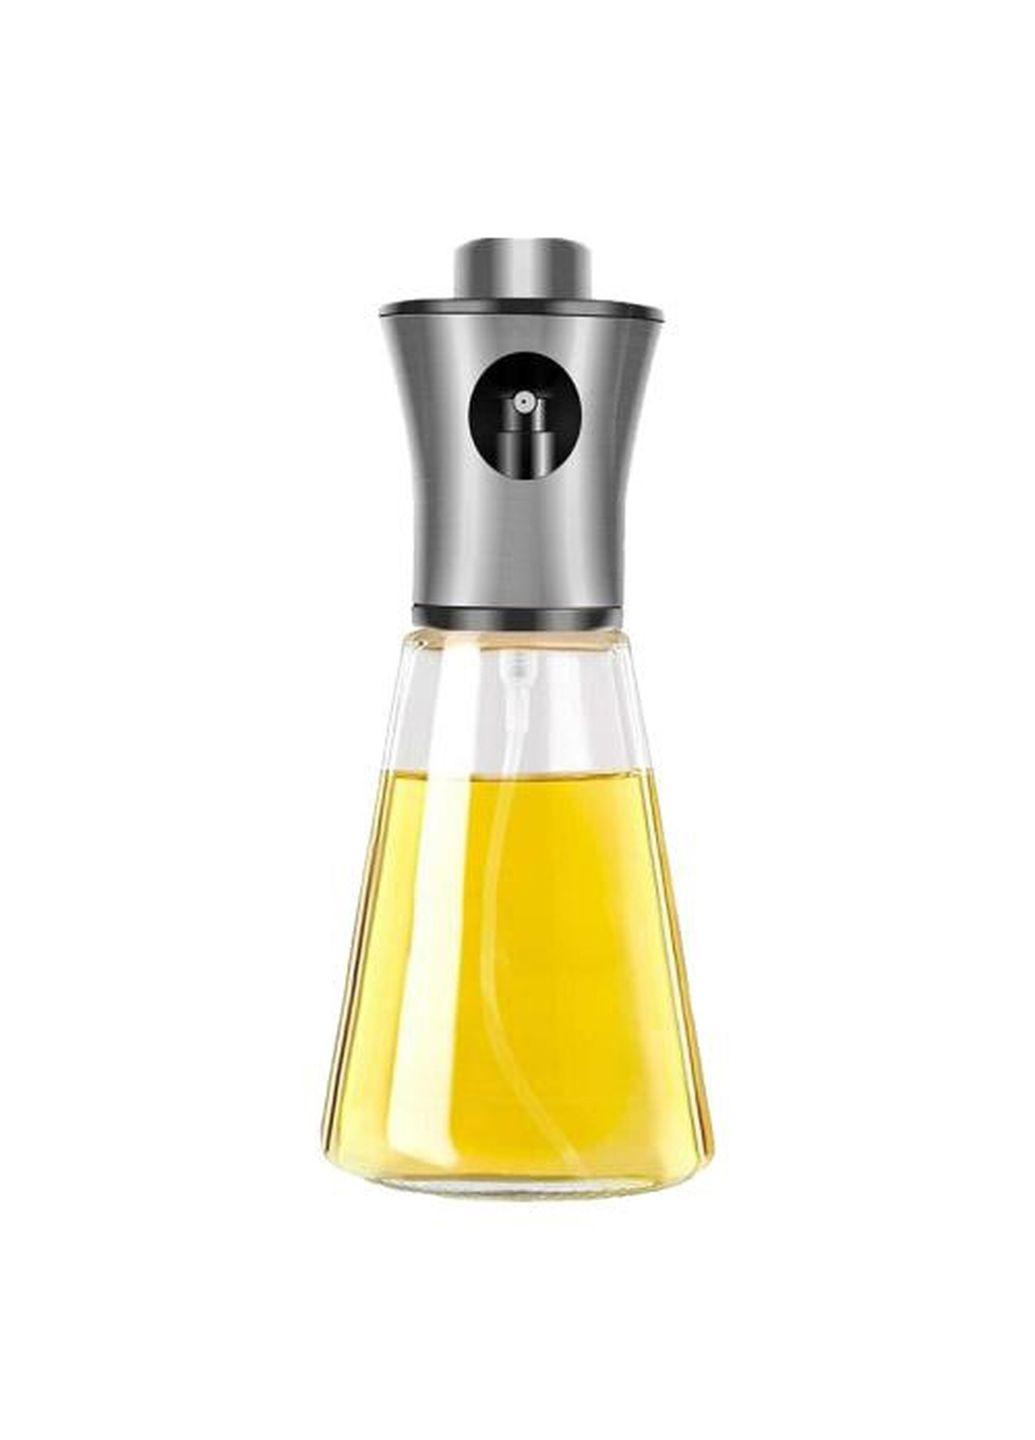 Распылитель диспенсер бутылка спрей для масла, уксуса, соусов, 200 мл стеклянный Kitchen Master (264387157)